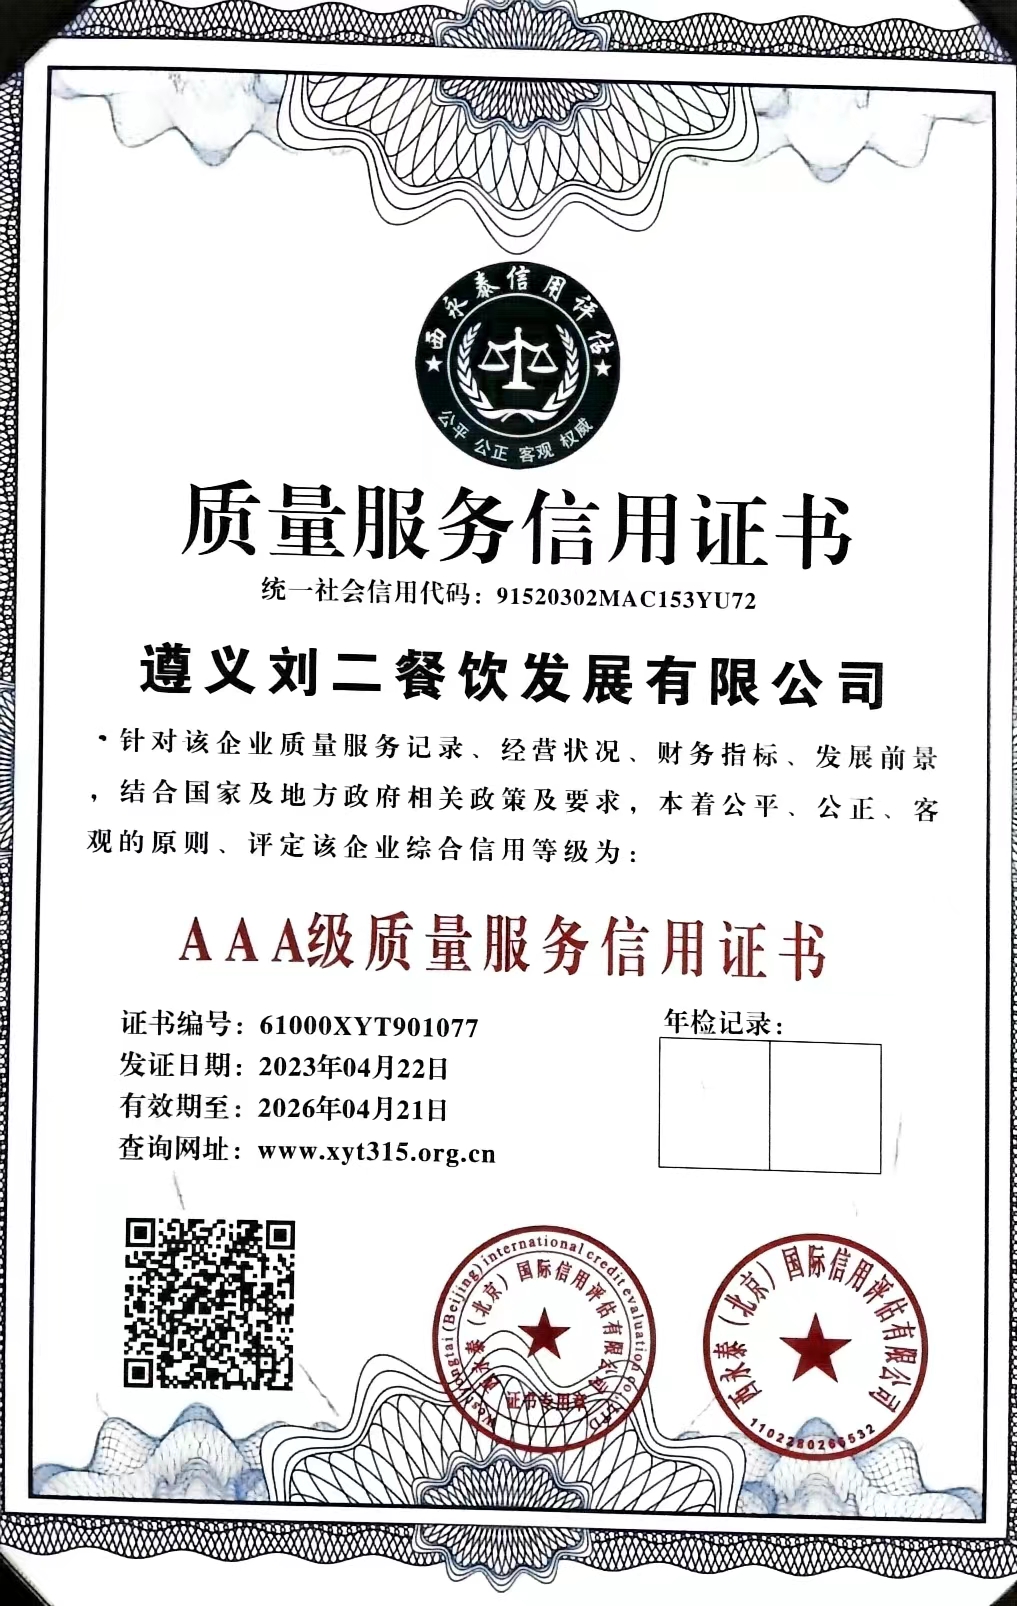 祝贺：遵义刘二餐饮发展有限公司通过AAA认证